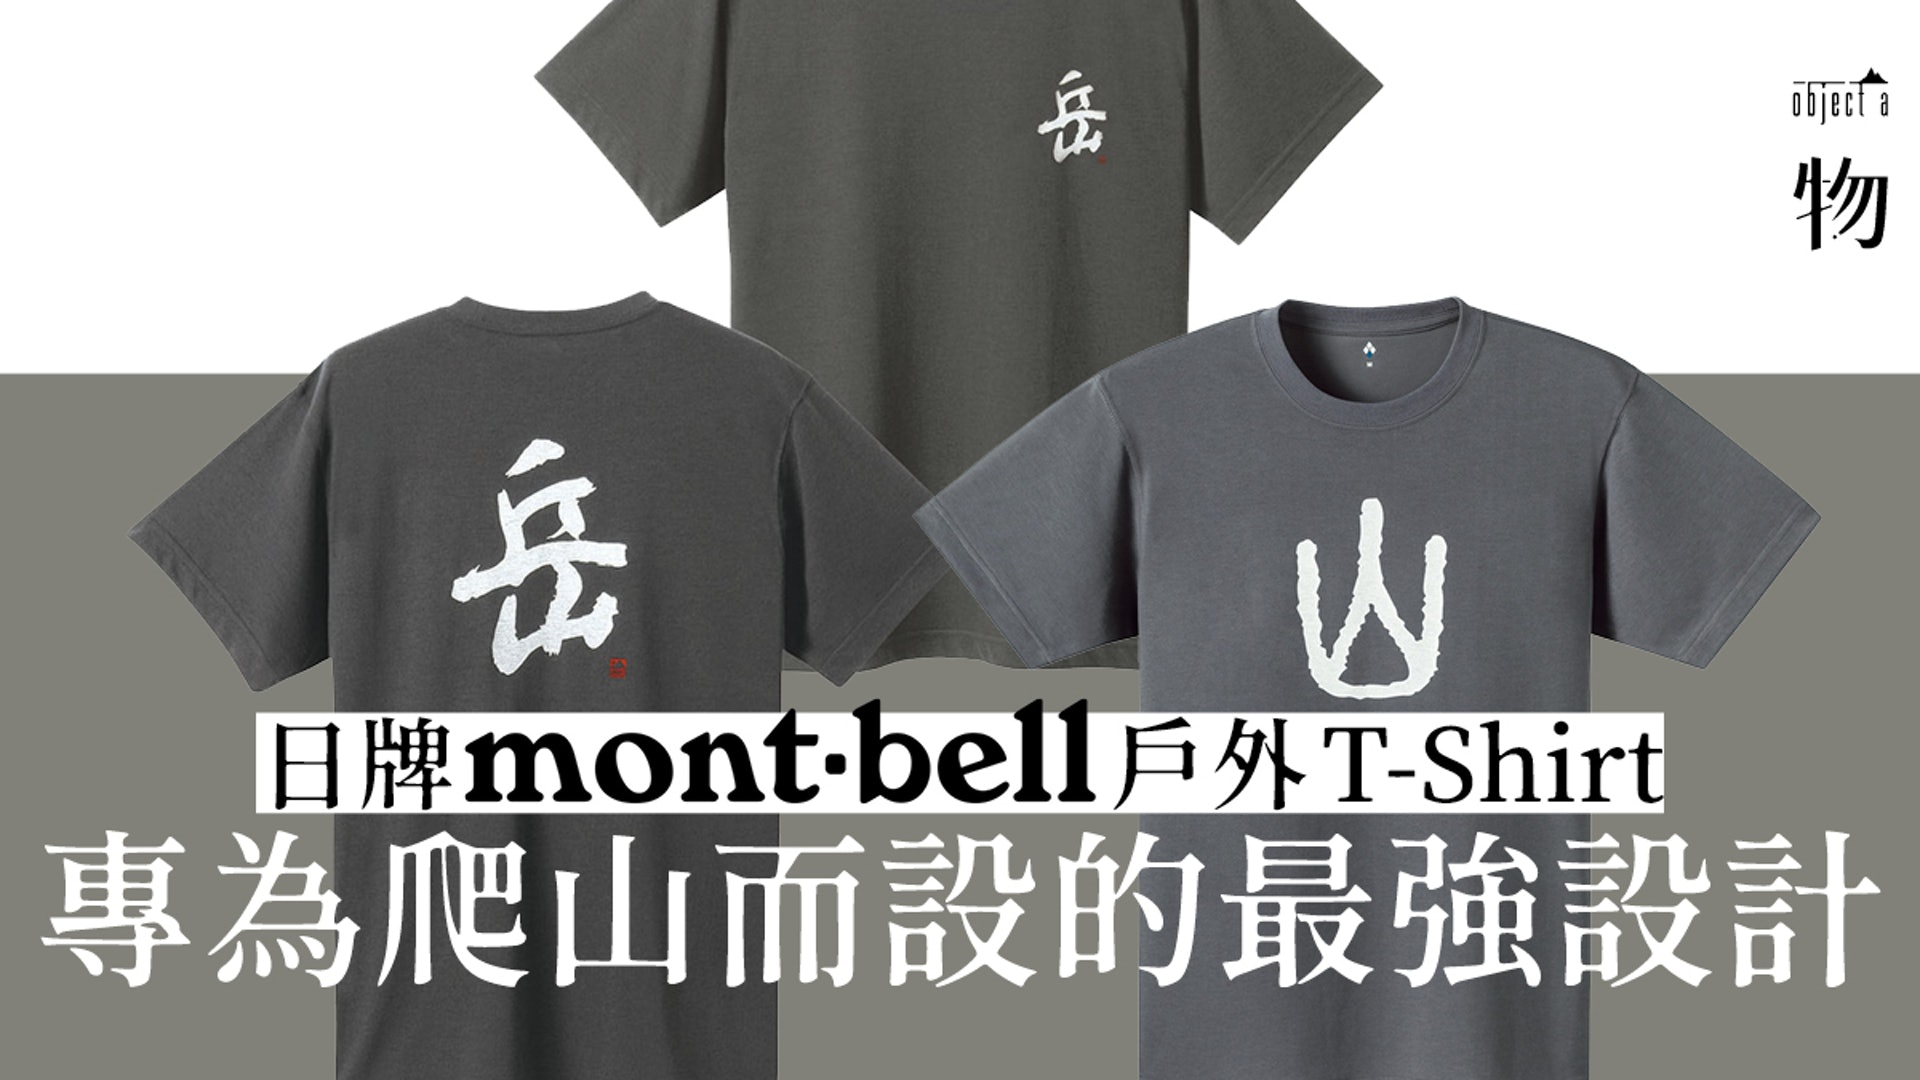 Mont Bell 通爽與耐磨的專業戶外t Shirt 勇敢面對山岳挑戰 香港01 一物